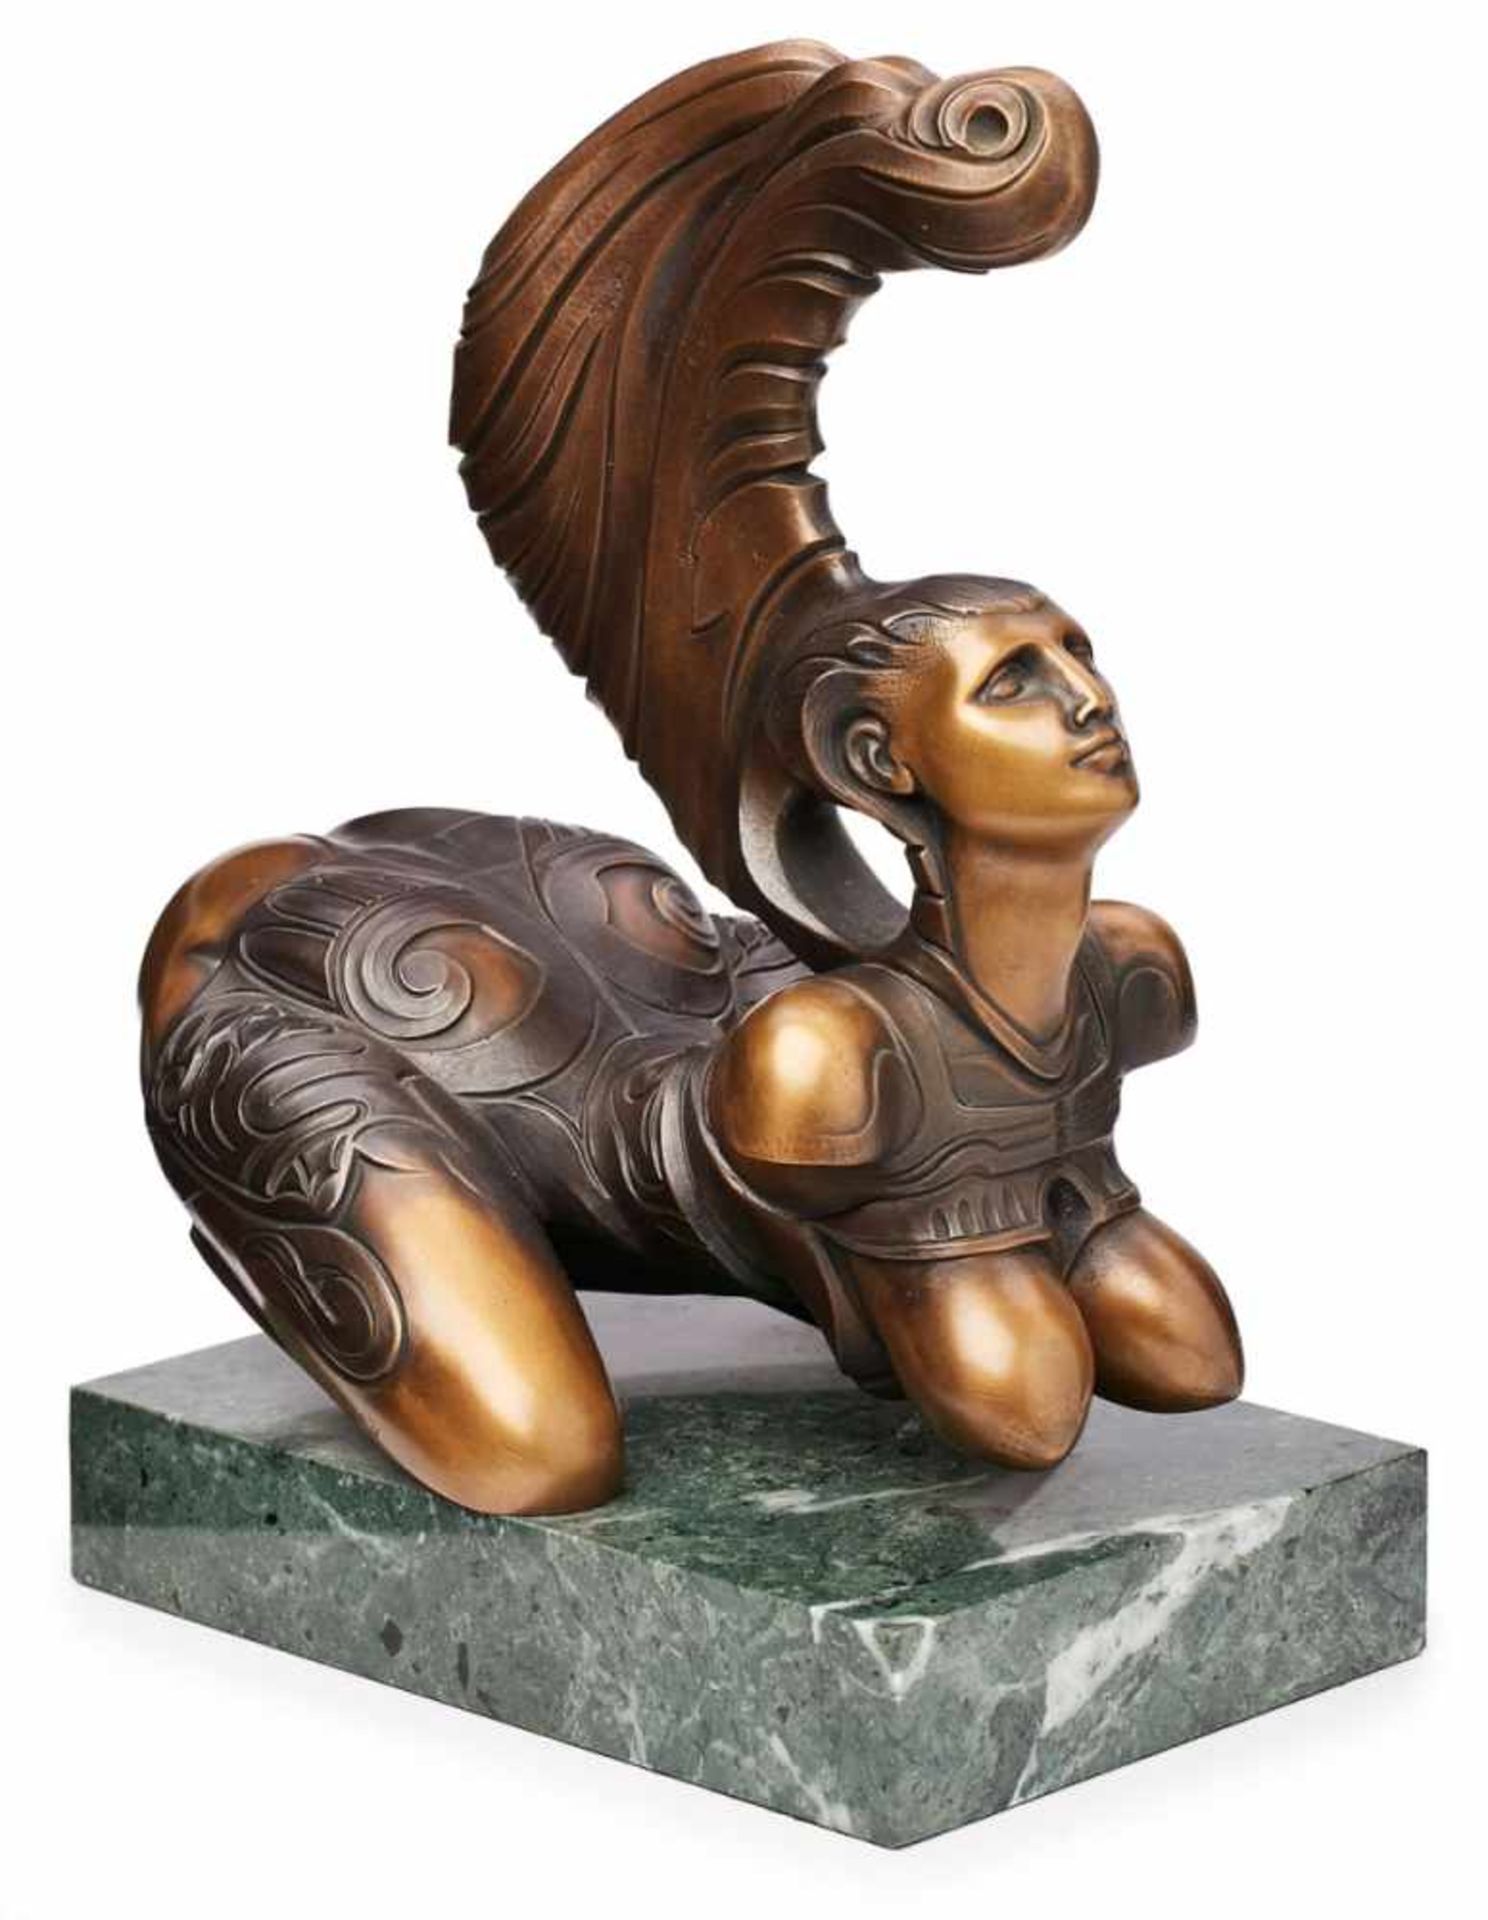 Bronze Ernst Fuchs(1930 Wien - 2015 Wien) "Sphinx 2", 1991. Expl. 071/ 1000. Kniender weibl. Akt